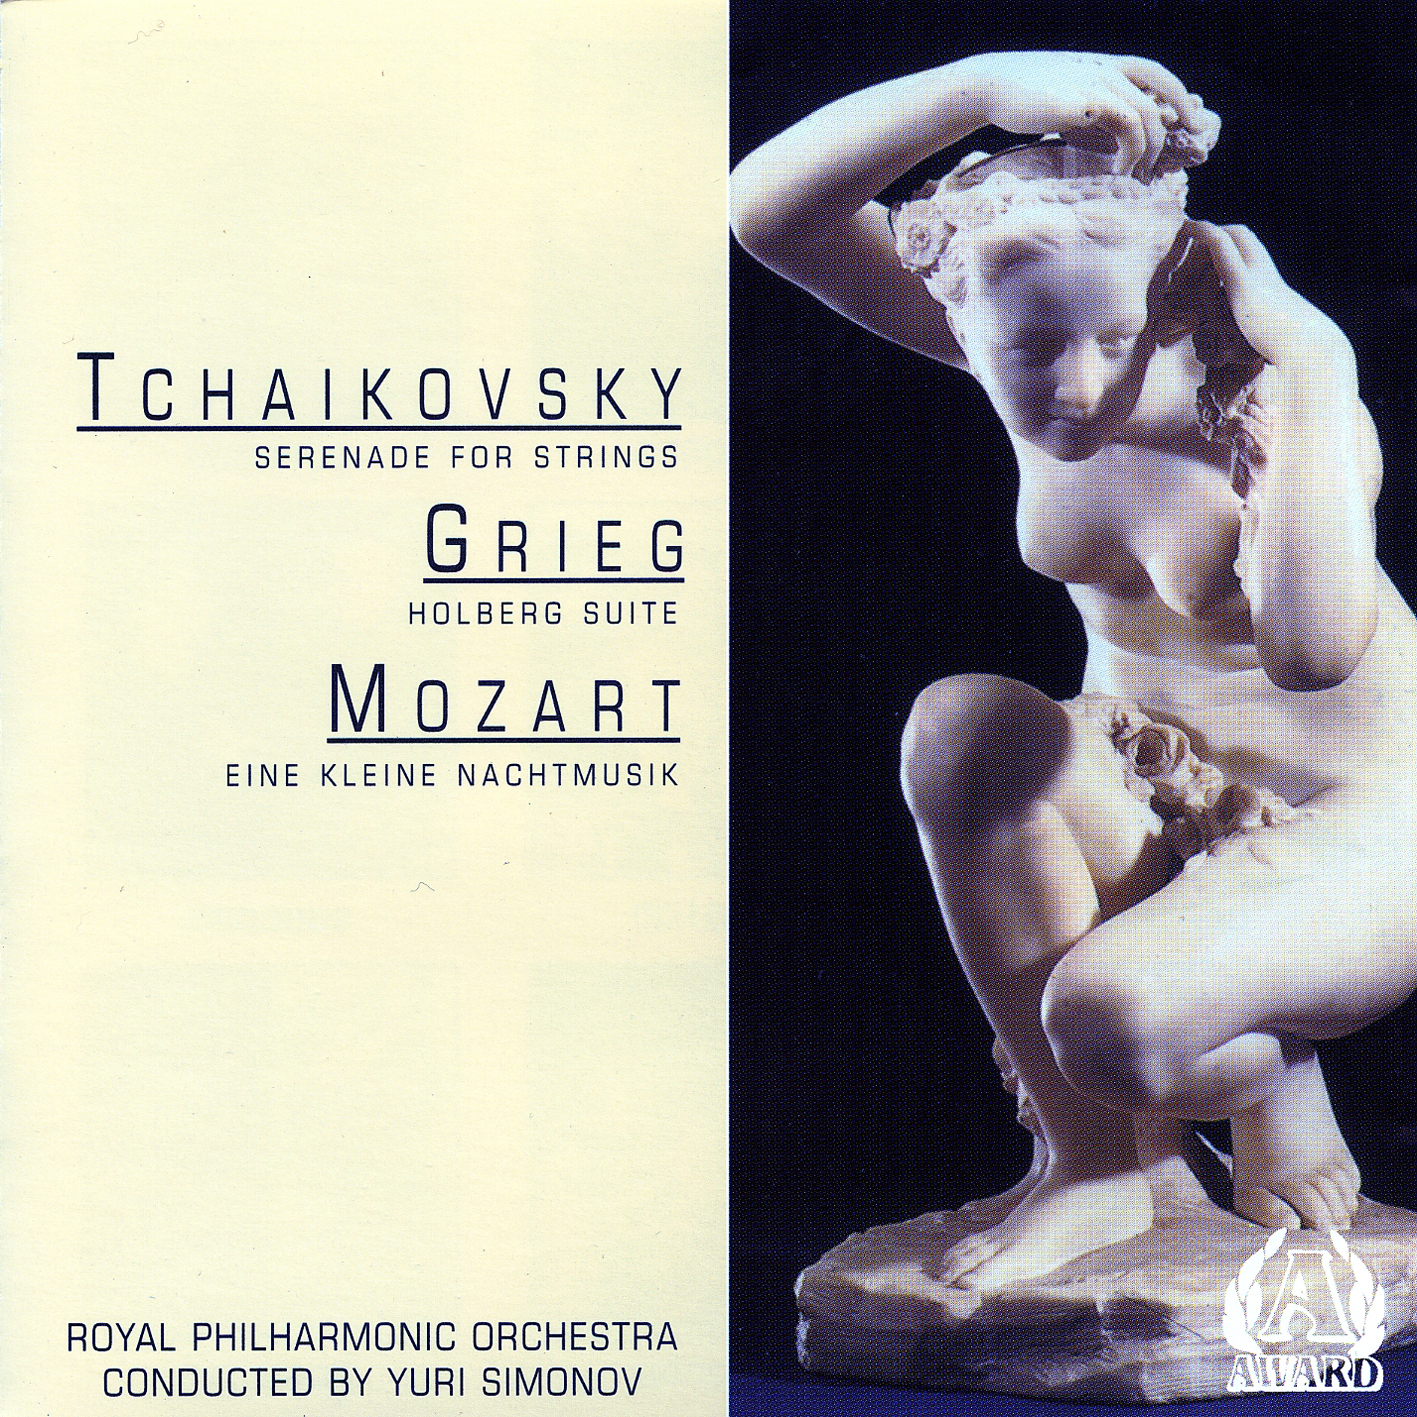 Tchaikovsky - Serenade For Strings / Grieg - Holberg Suite / Mozart - Eine Kleine Nachtmusik